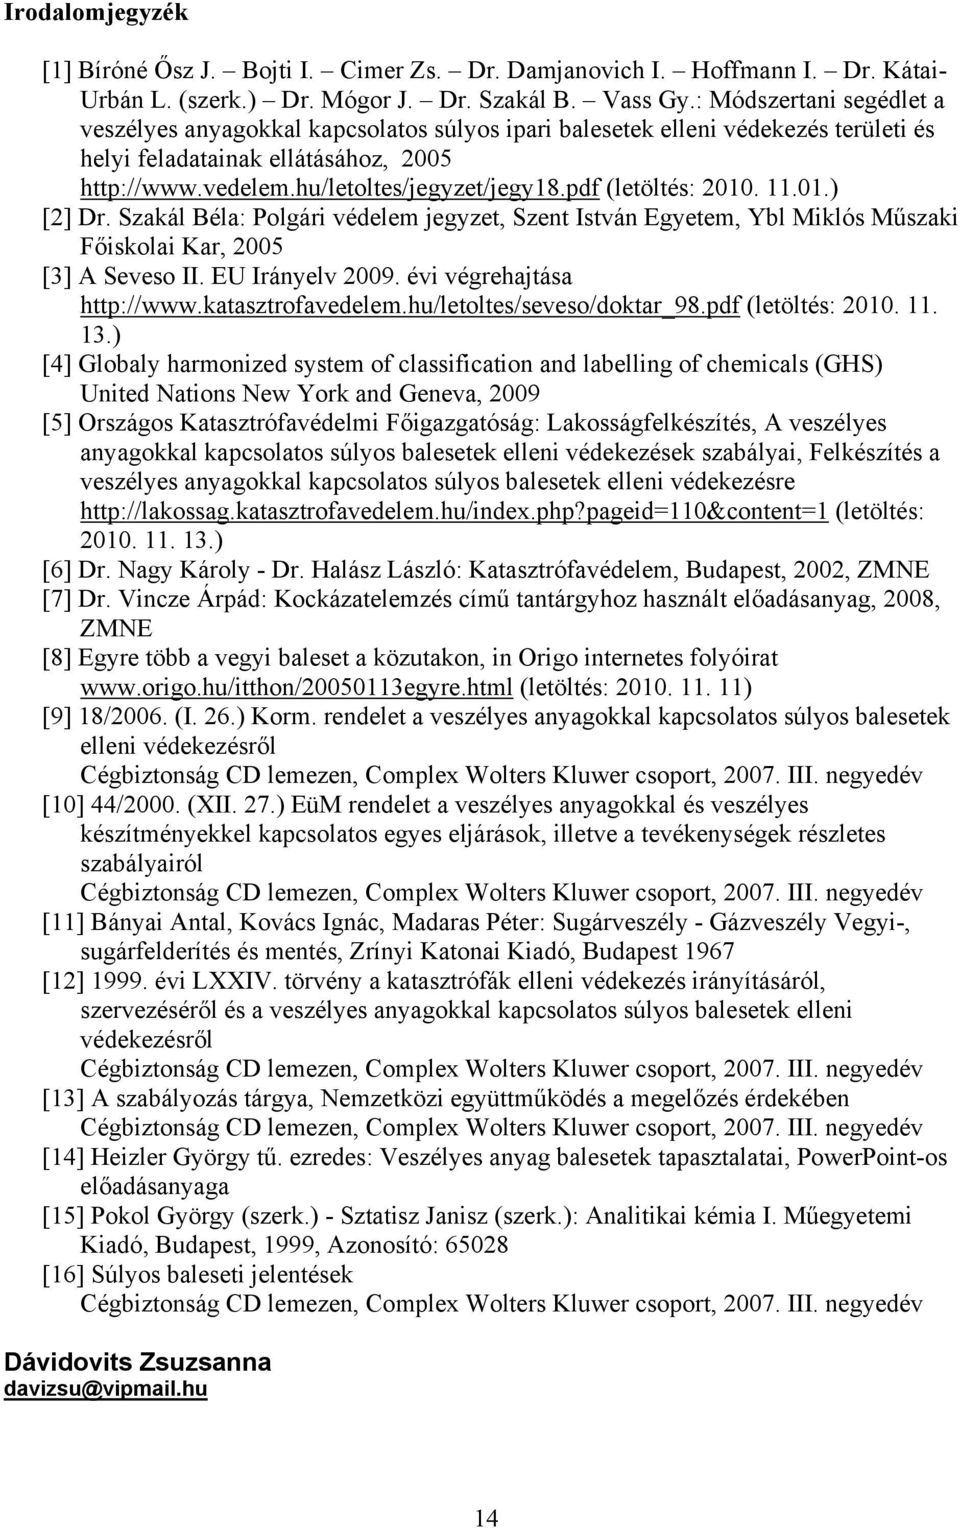 pdf (letöltés: 2010. 11.01.) [2] Dr. Szakál Béla: Polgári védelem jegyzet, Szent István Egyetem, Ybl Miklós Műszaki Főiskolai Kar, 2005 [3] A Seveso II. EU Irányelv 2009. évi végrehajtása http://www.